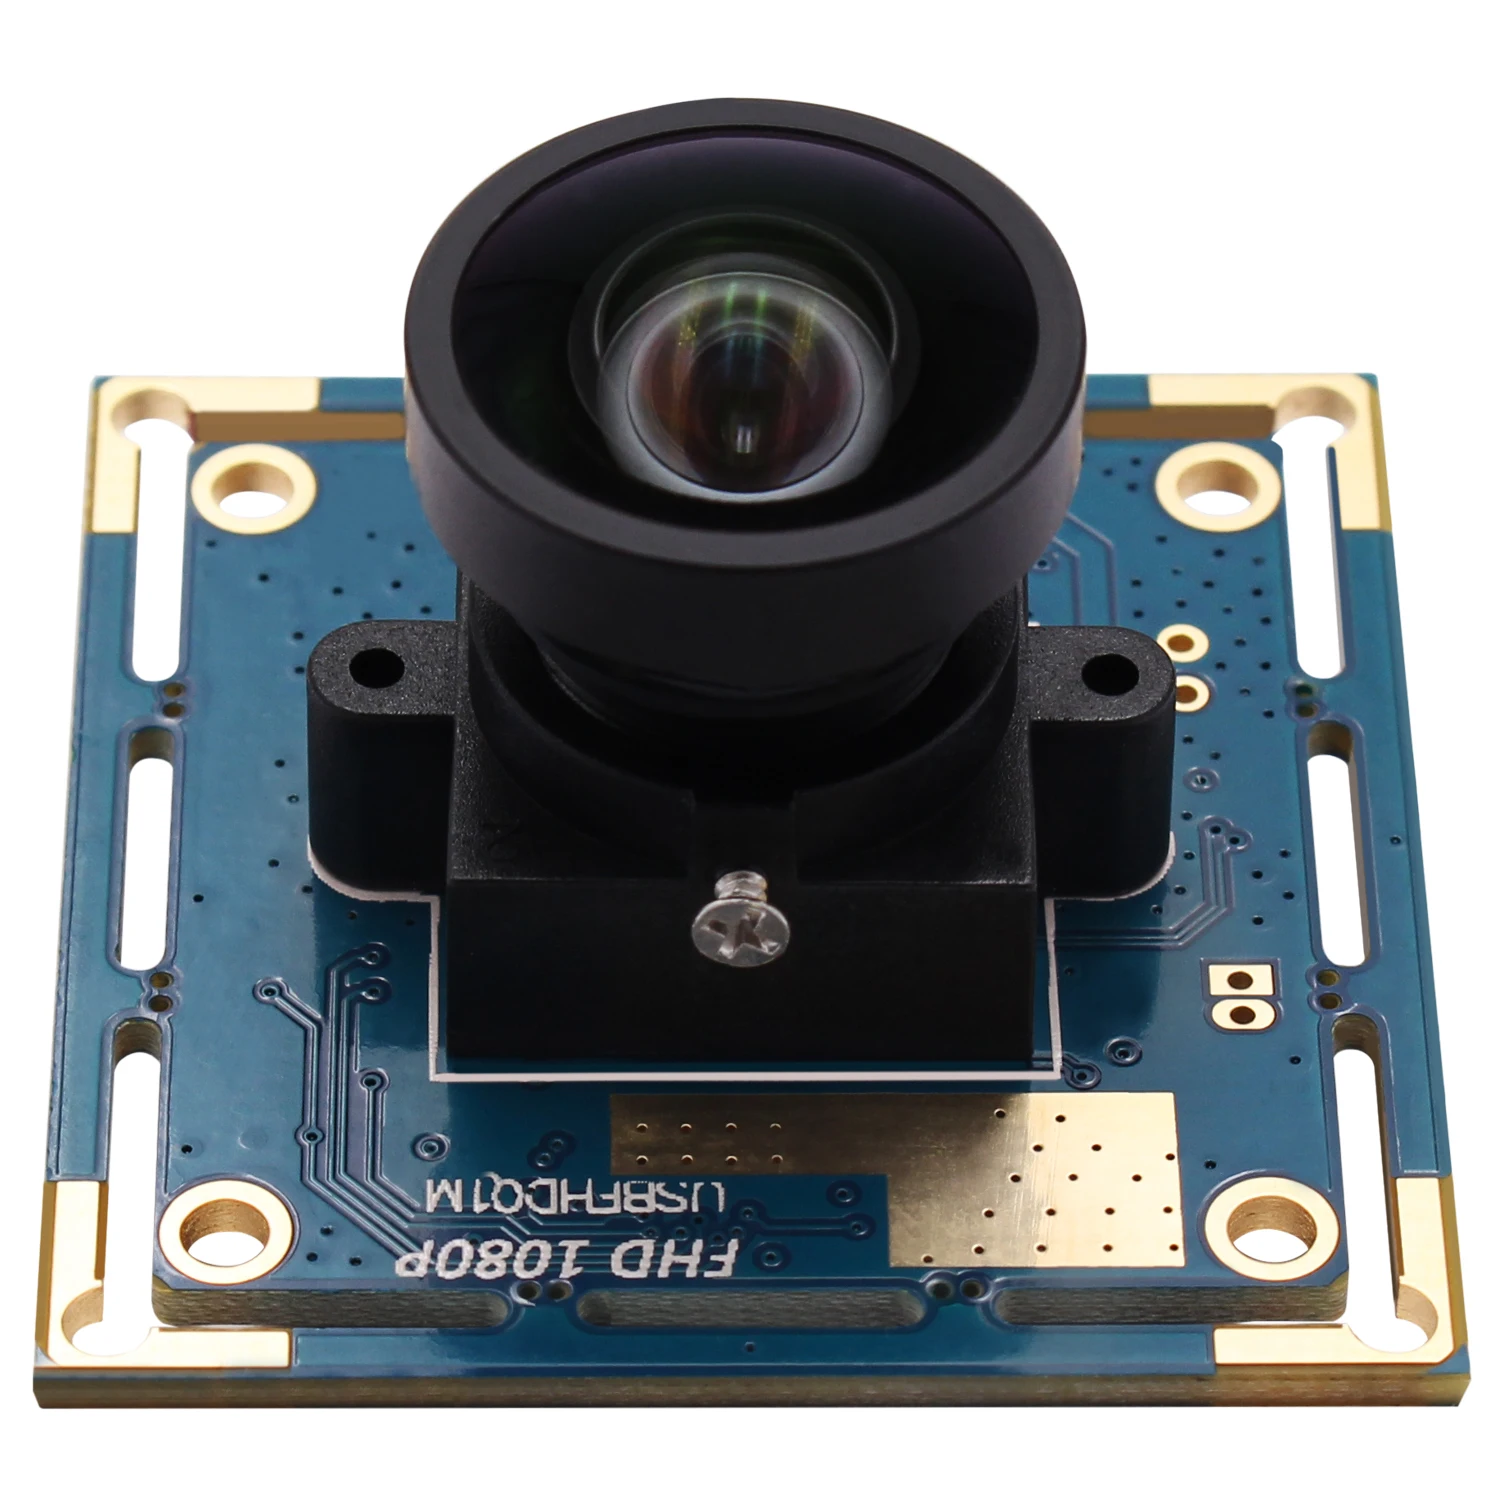 ELP 1080P FOV 100 градуса CMOS OV2710 Full HD 2MP високоскоростен 120fps USB камера модул за роботизирани системи, машинно зрение